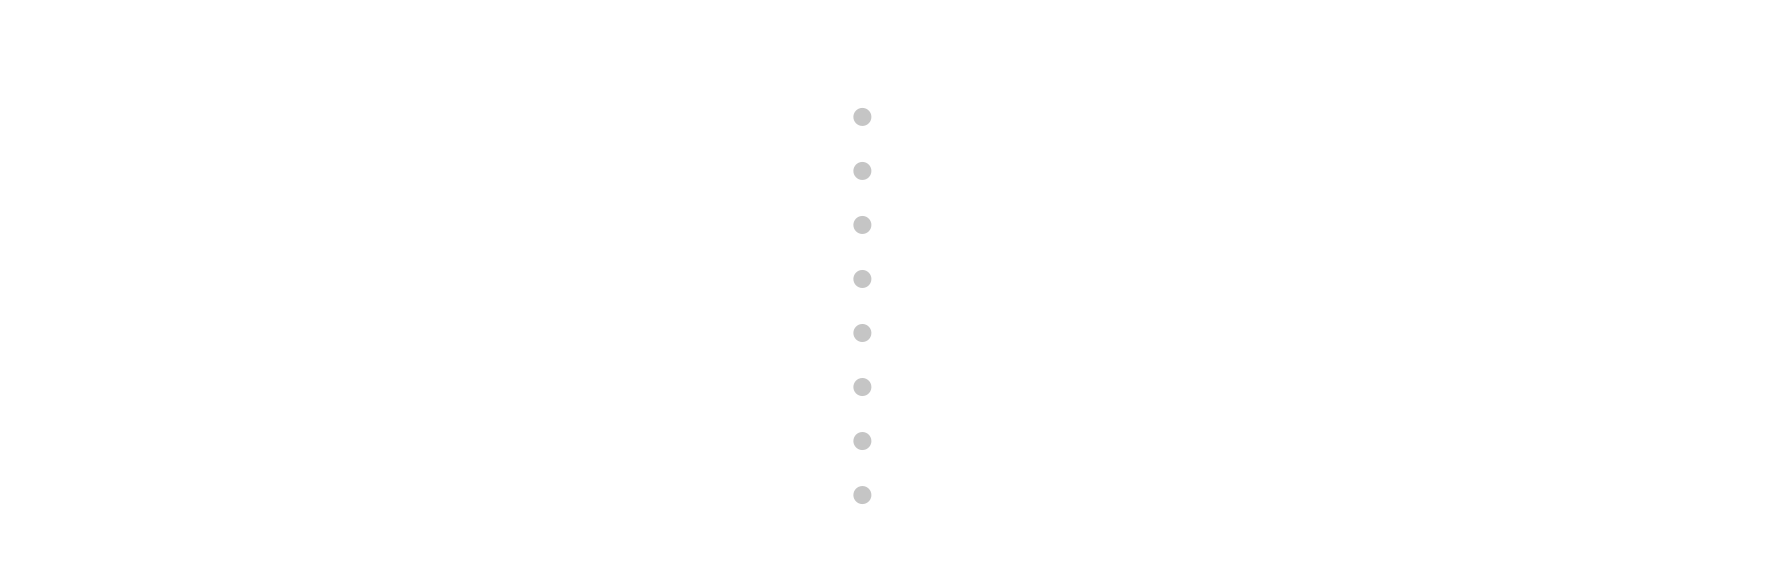 actiontwelve.com logo